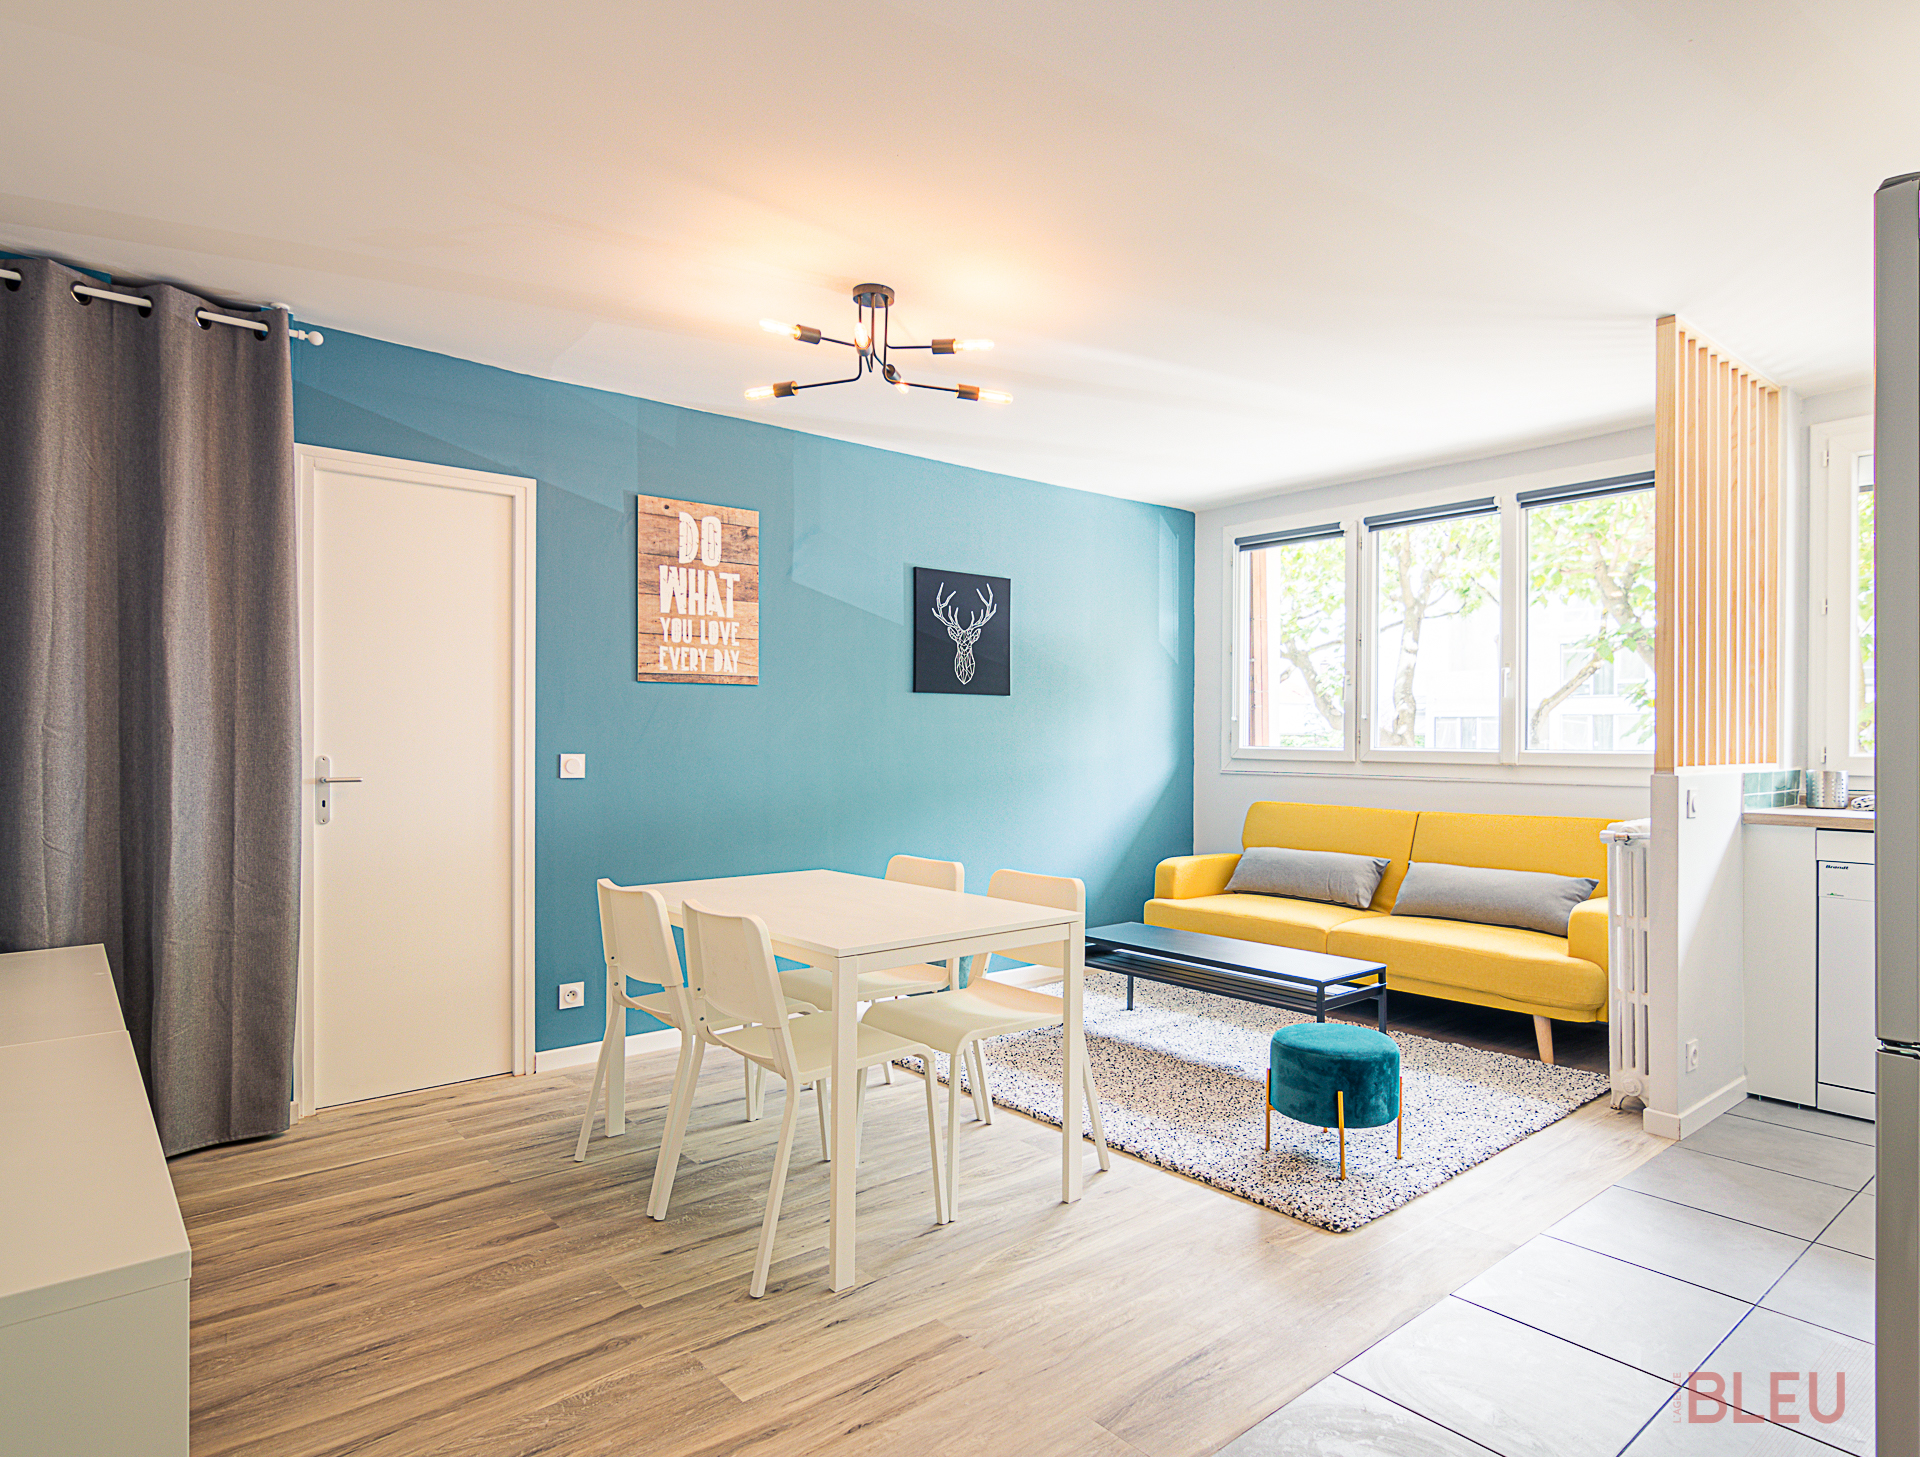 Vue d'un espace de vie moderne et lumineux, optimisé par l'Agence BLEU, cabinet d'architecture Paris et architecte d'intérieur Paris. Comprend un coin repas avec une table blanche et un coin salon avec un canapé jaune vif contre un mur bleu turquoise